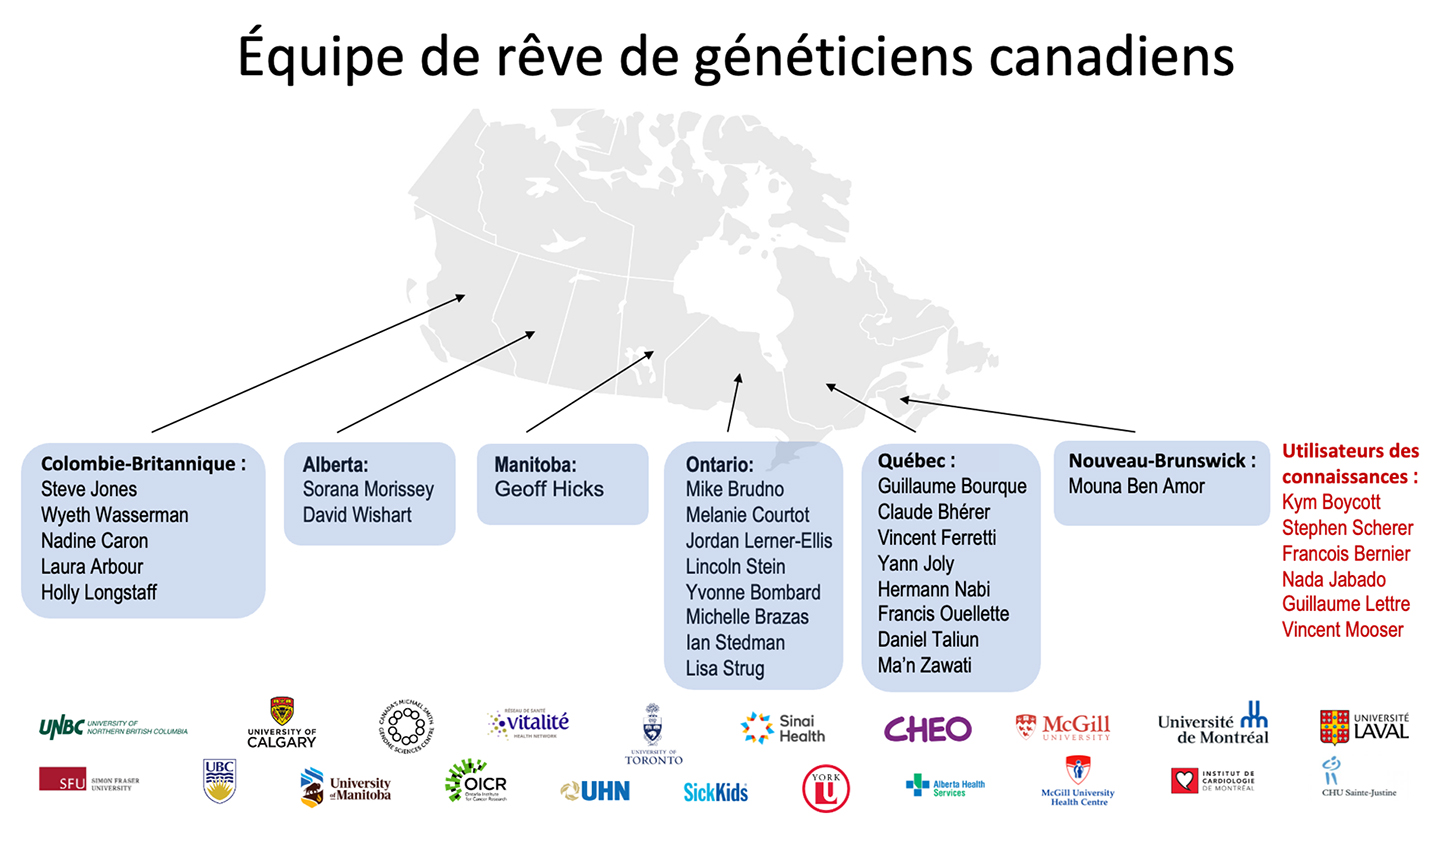 La carte représente la répartition géographique au pays des généticiens contribuant à la création de la Bibliothèque pancanadienne du génome humain. Les établissements pour lesquels ils travaillent sont représentés par leur logo.